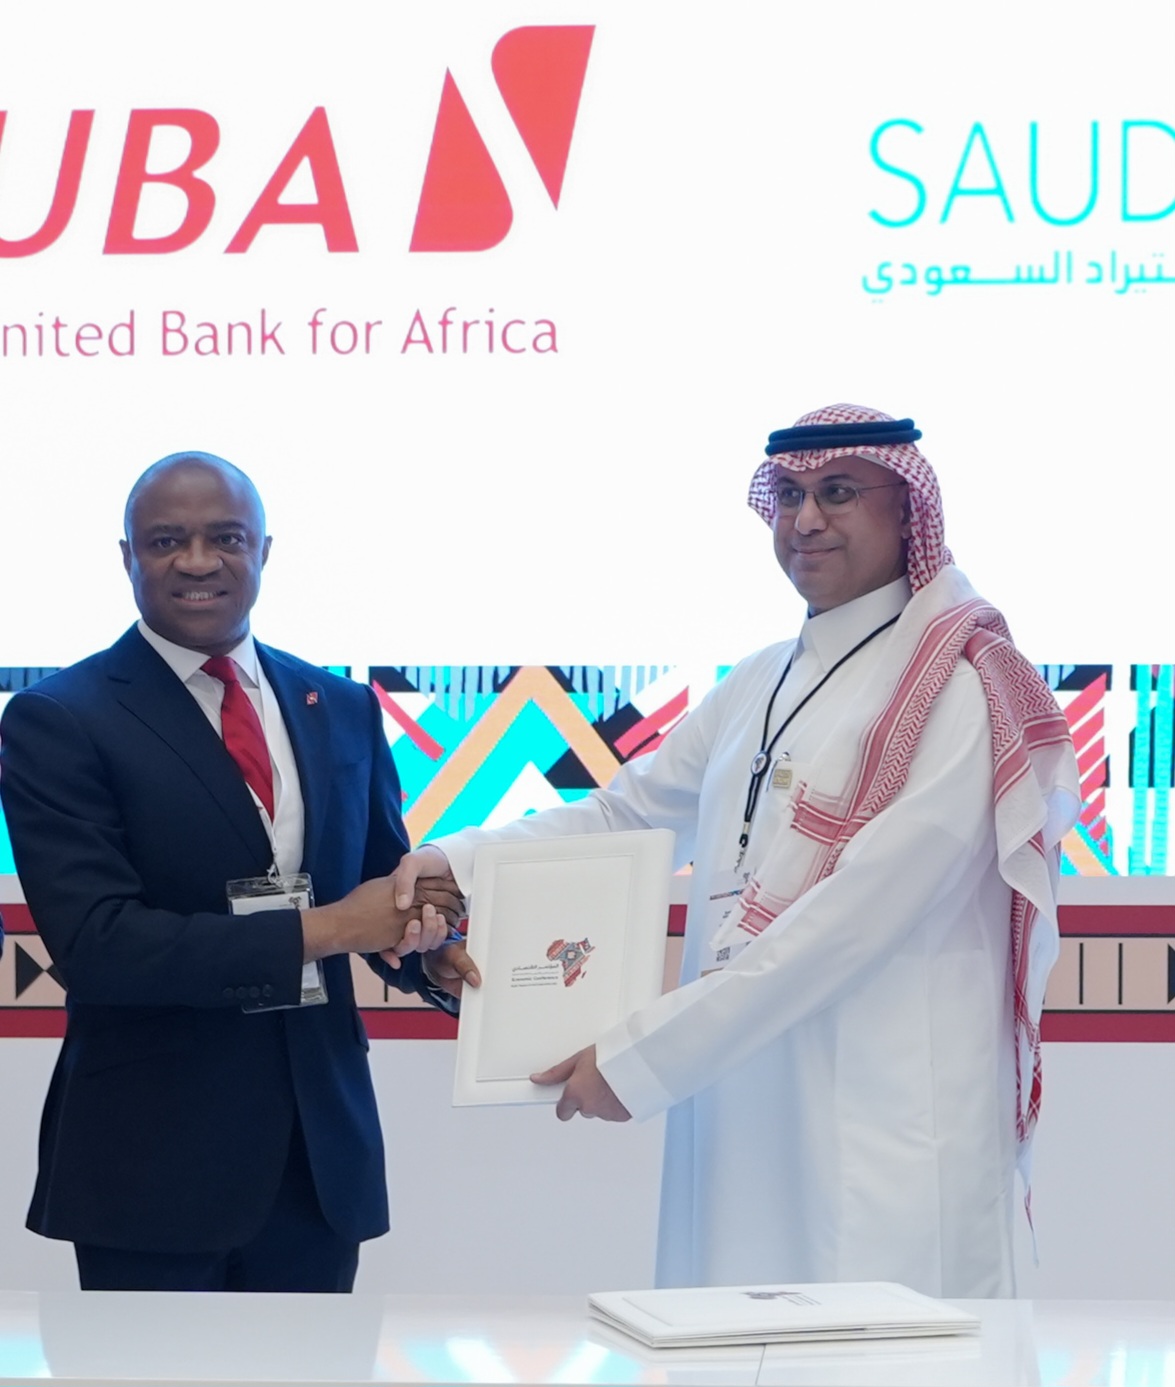 La banque mondiale de l'Afrique, United Bank for Africa (UBA) Plc, et Saudi Export-Import Bank (Saudi EXIM), une agence de crédit ont signé un partenariat pour booster les relations commerciales entre l'Afrique et le Moyen Orient